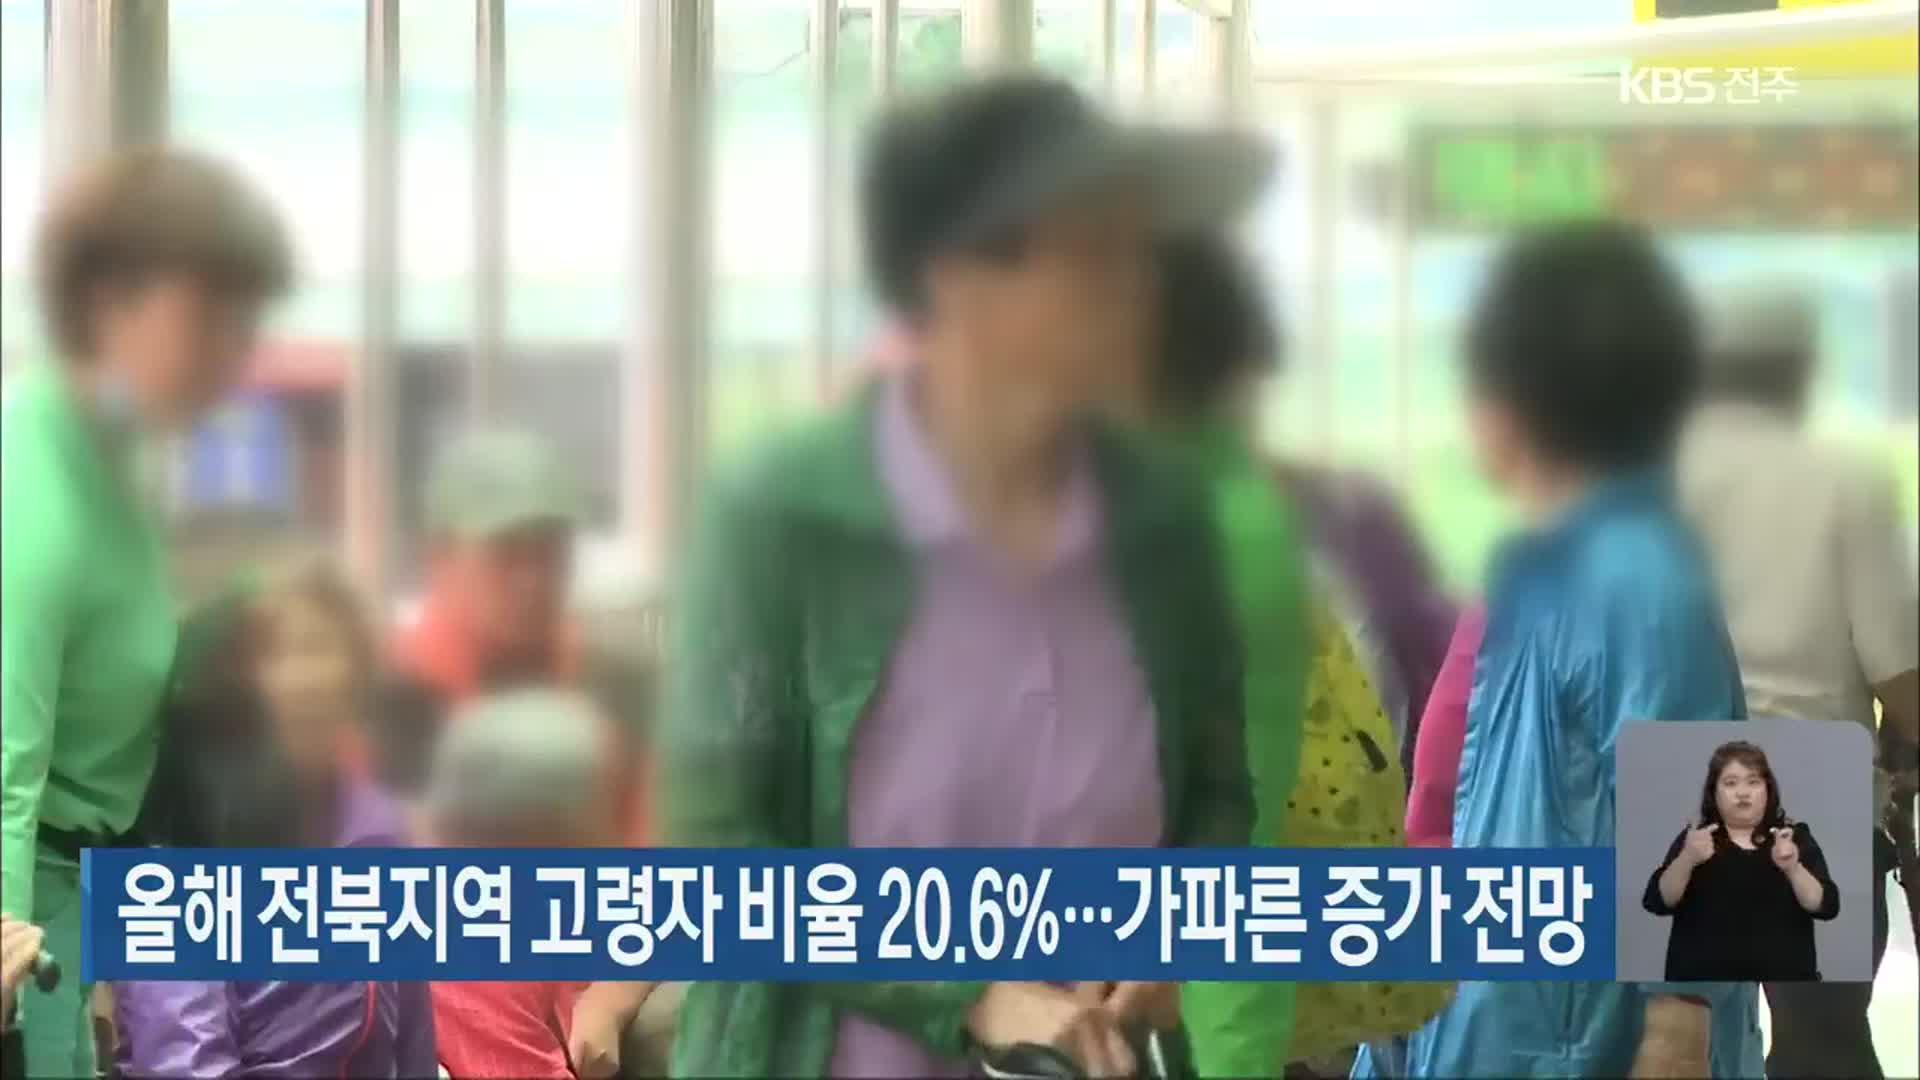 올해 전북지역 고령자 비율 20.6%…가파른 증가 전망